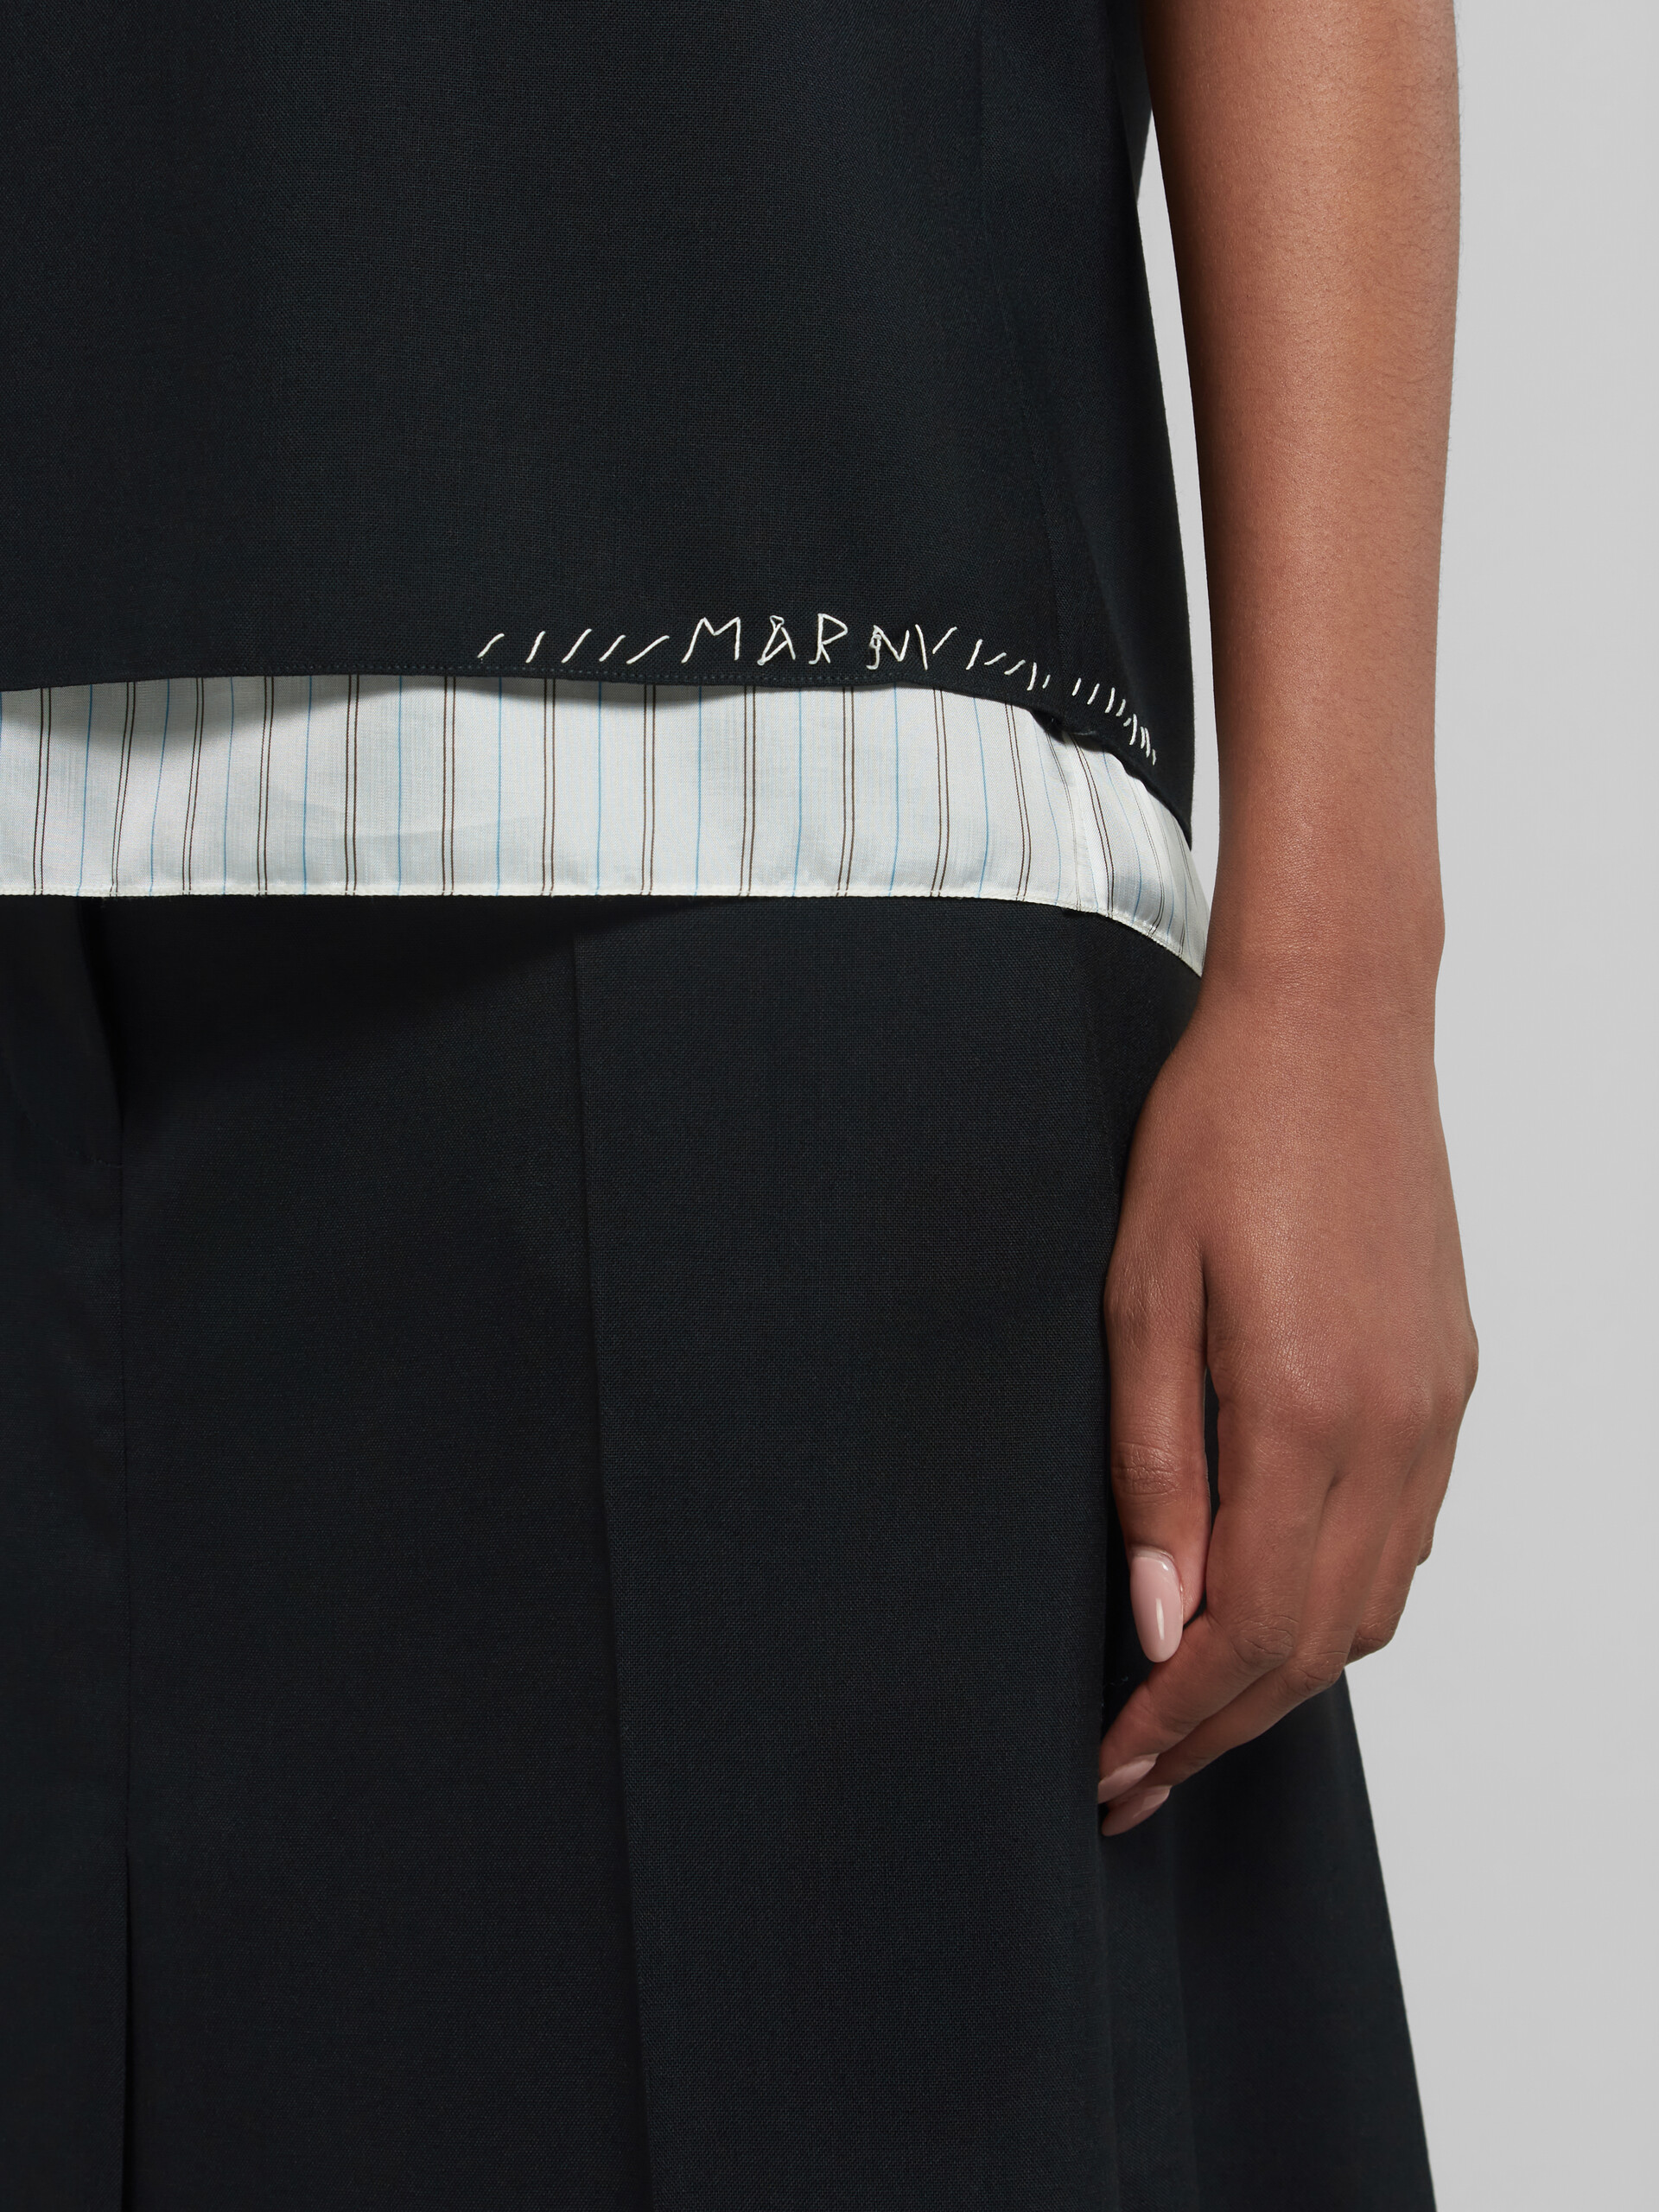 Top sin mangas de lana tropical negra con efecto remiendo Marni - Camisas - Image 4